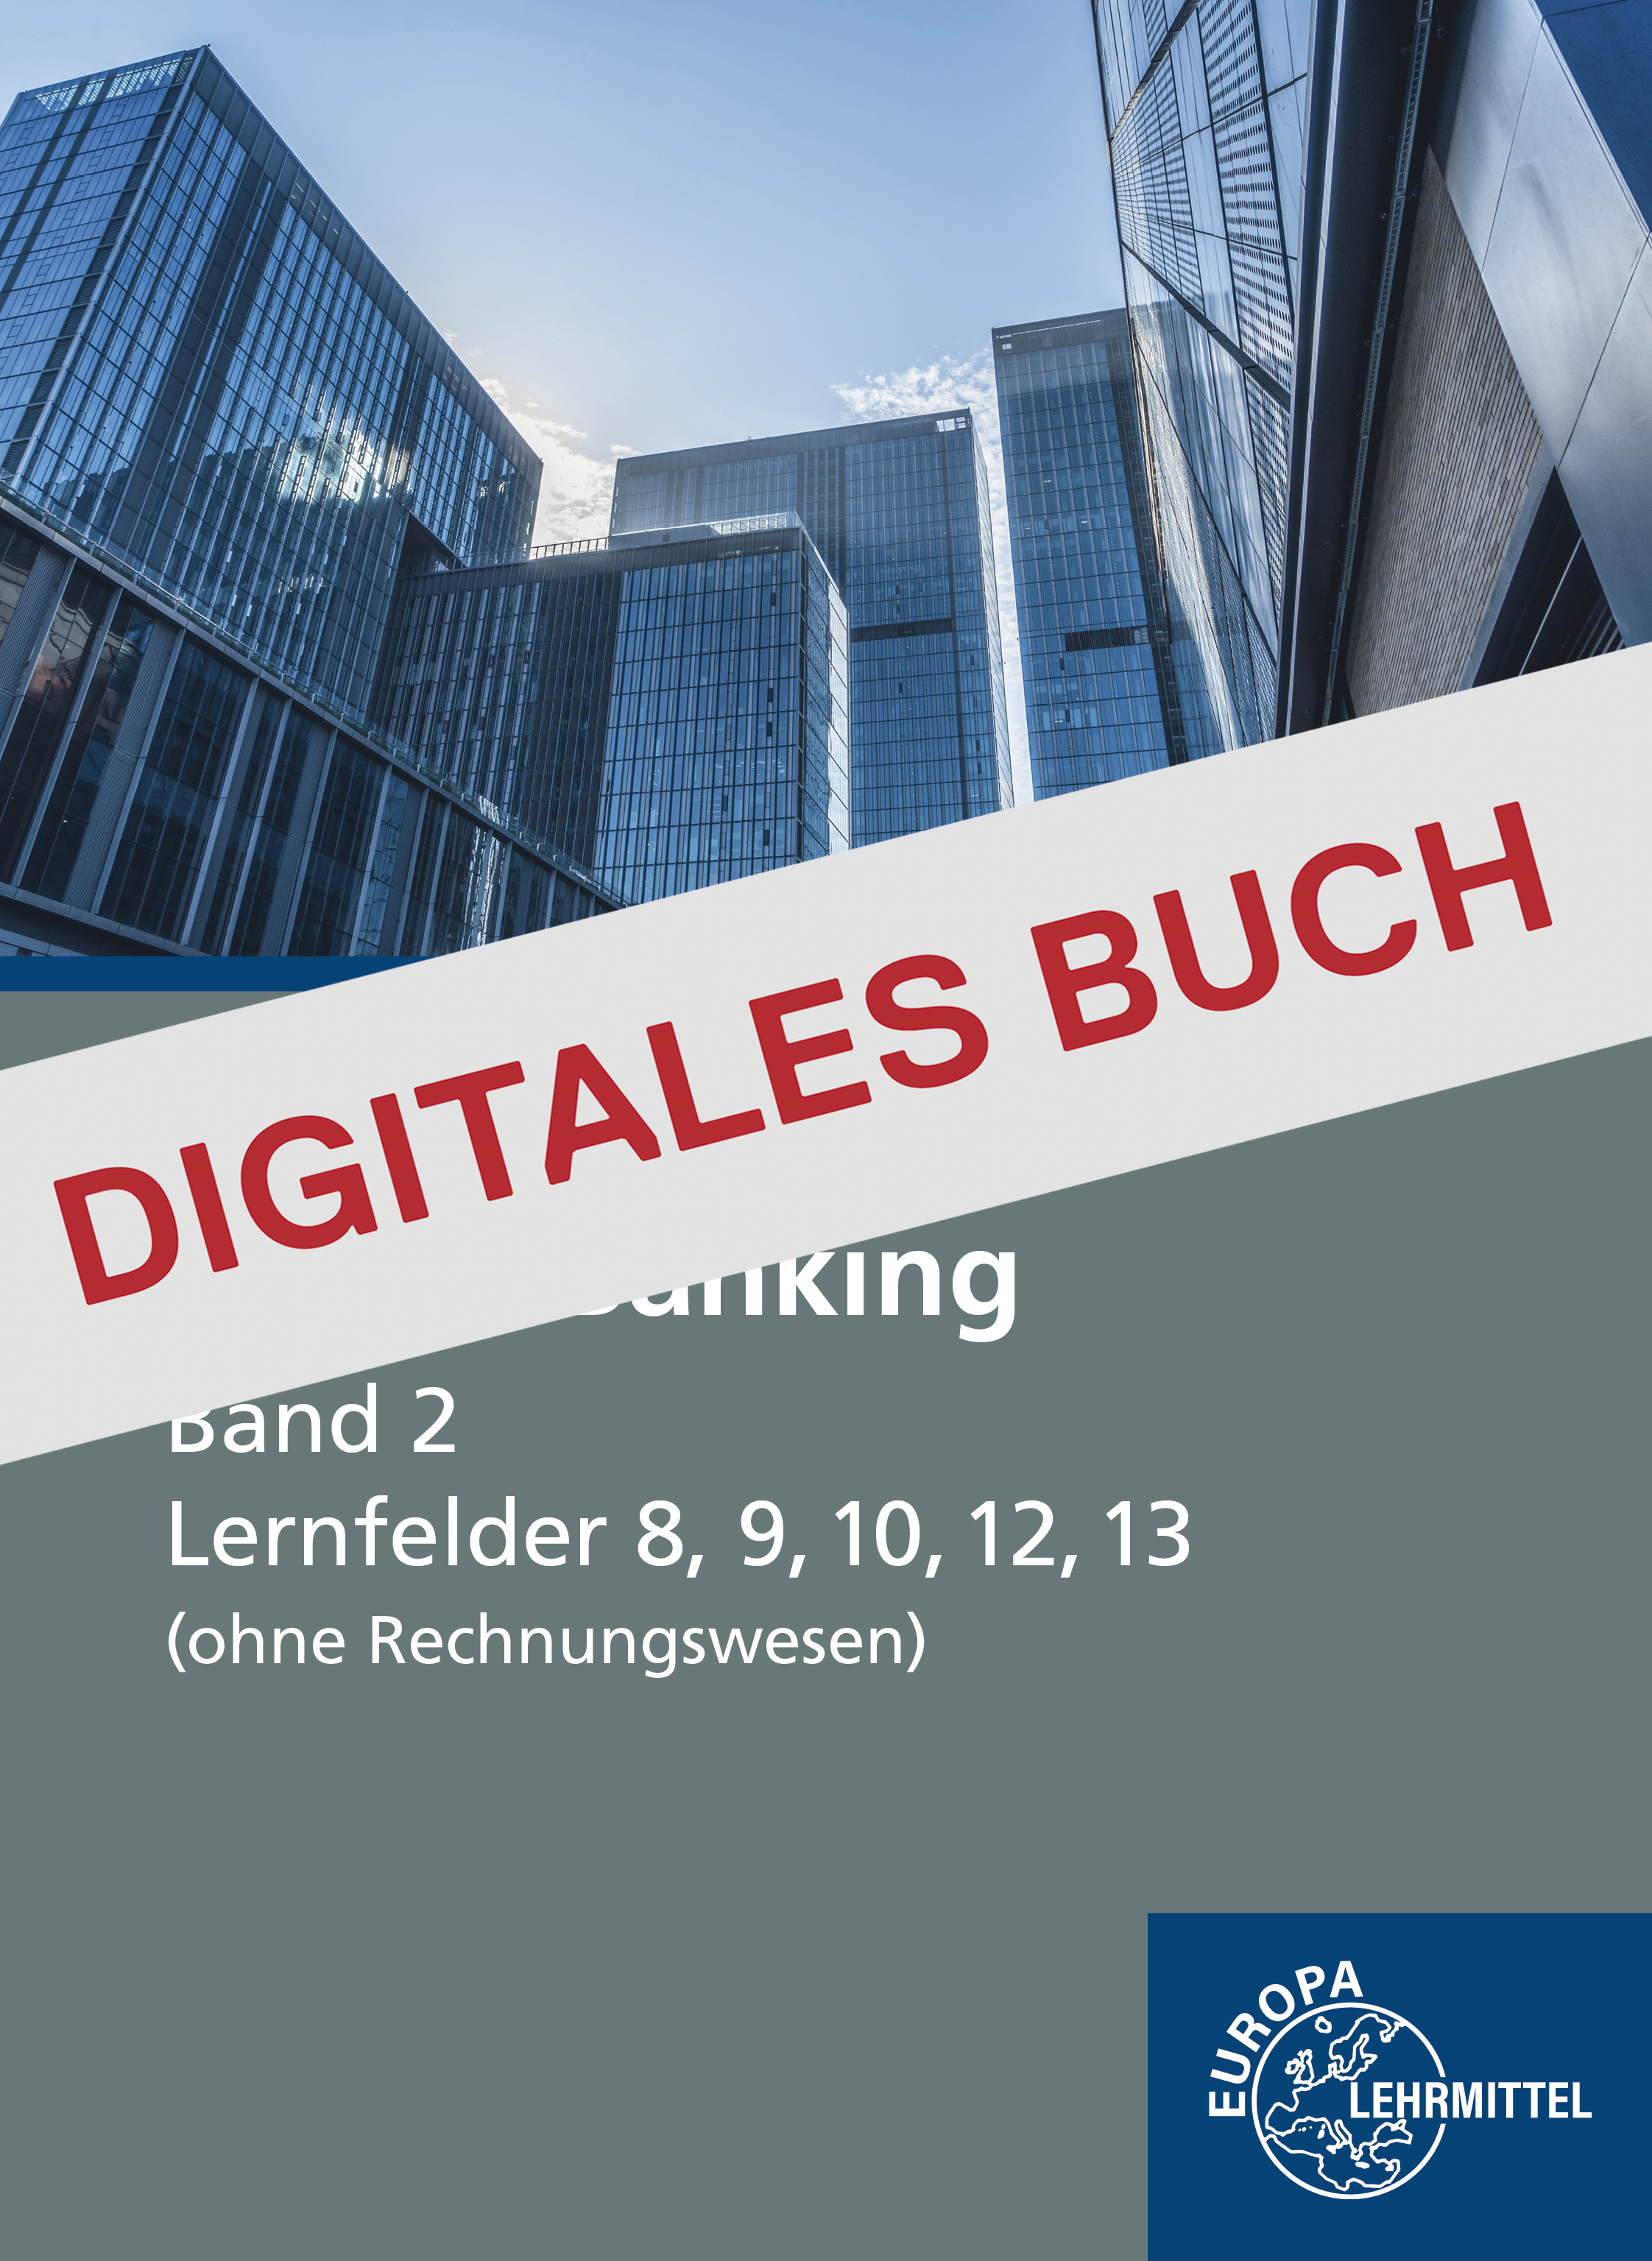 Neues Banking Band 2 LF 8, 9, 10, 12, 13 (ohne Rechnungswesen) - Digitales Buch